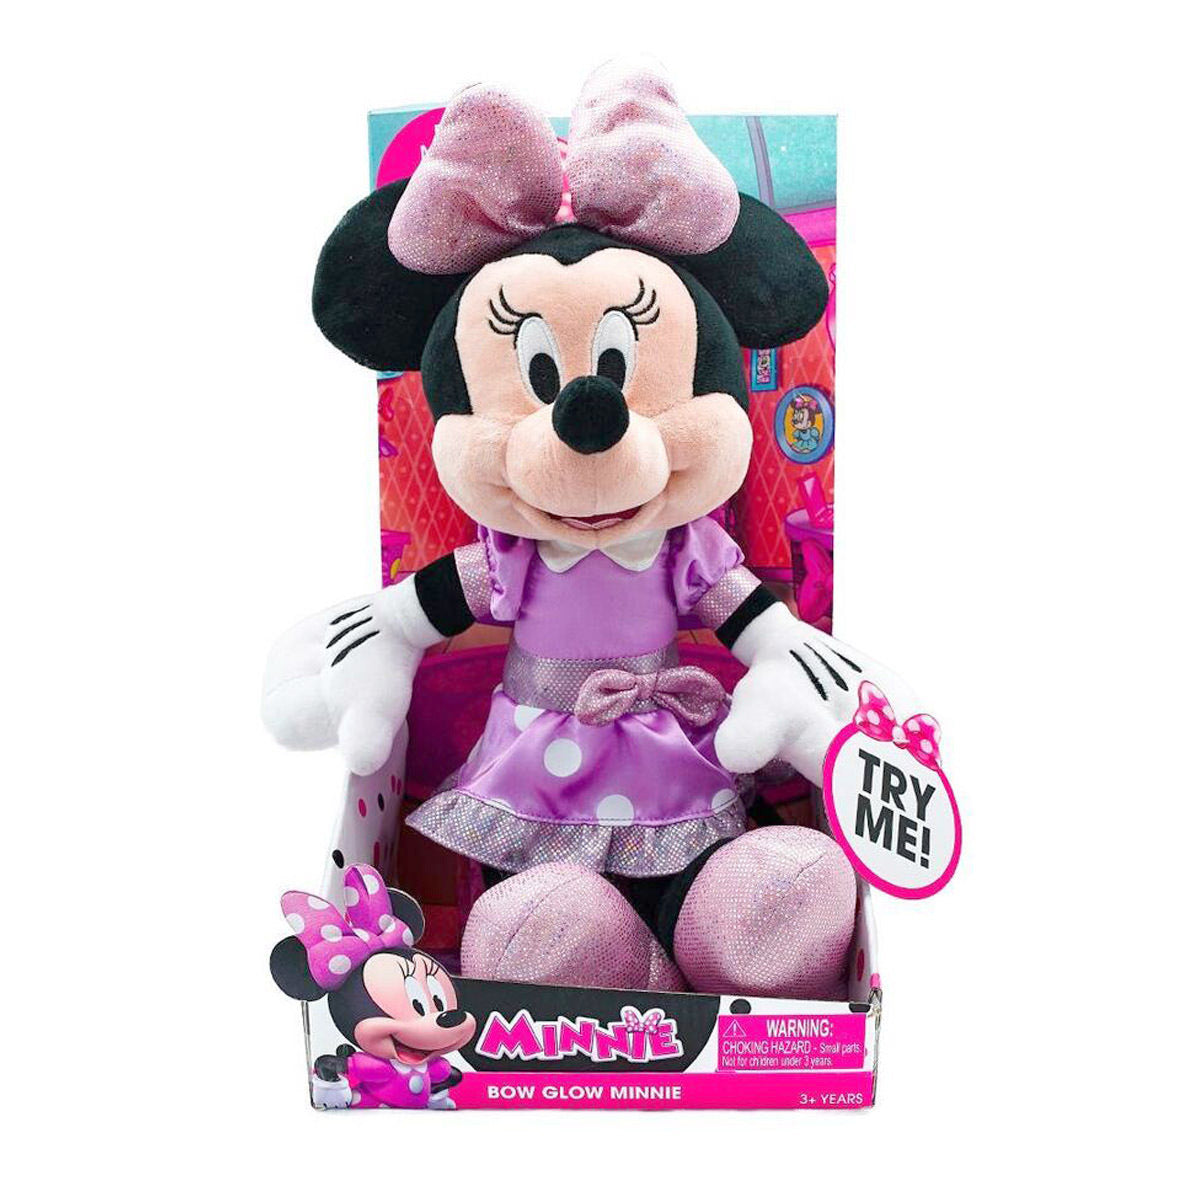 Minnie Mouse Bow Glow Minnie Plush - Purple